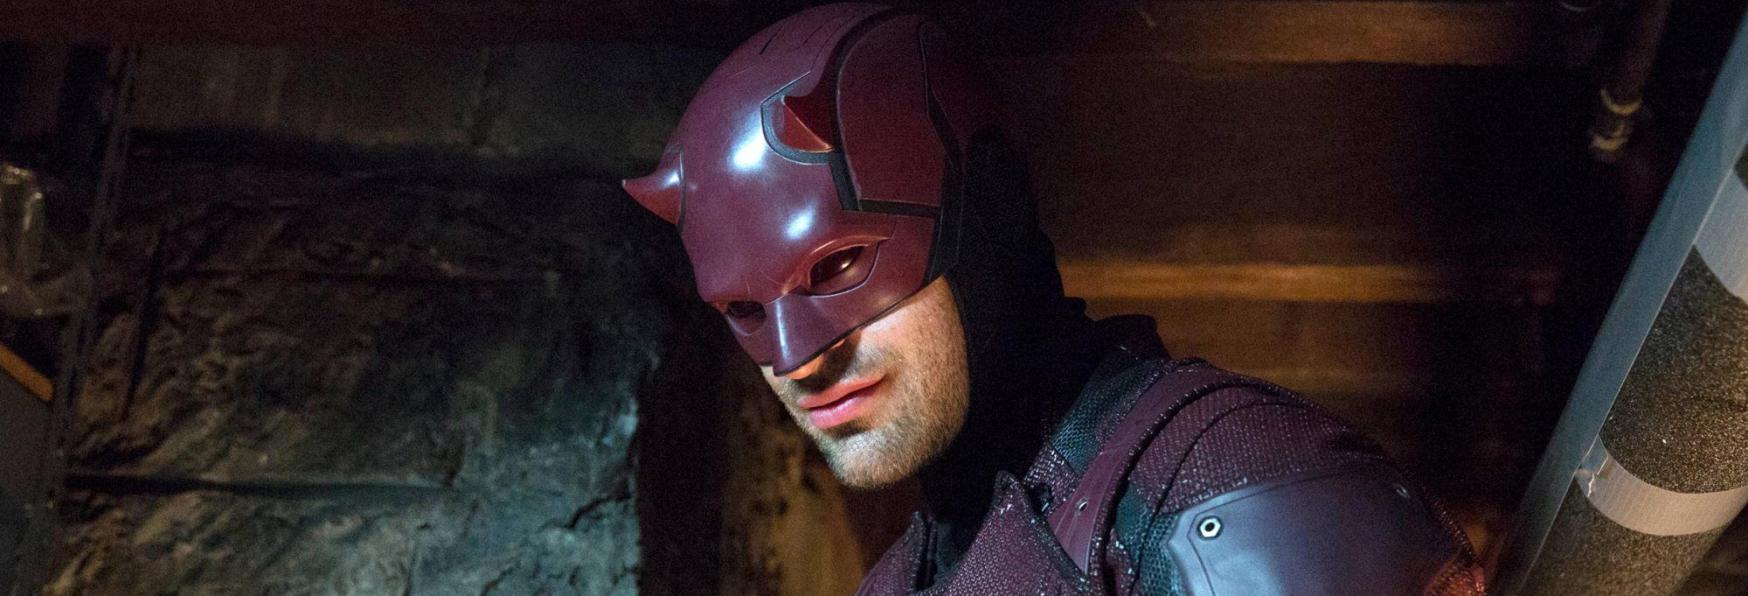 Daredevil: Disney+ al lavoro sulla nuova Serie TV! Svelati gli Sceneggiatori e i Produttori